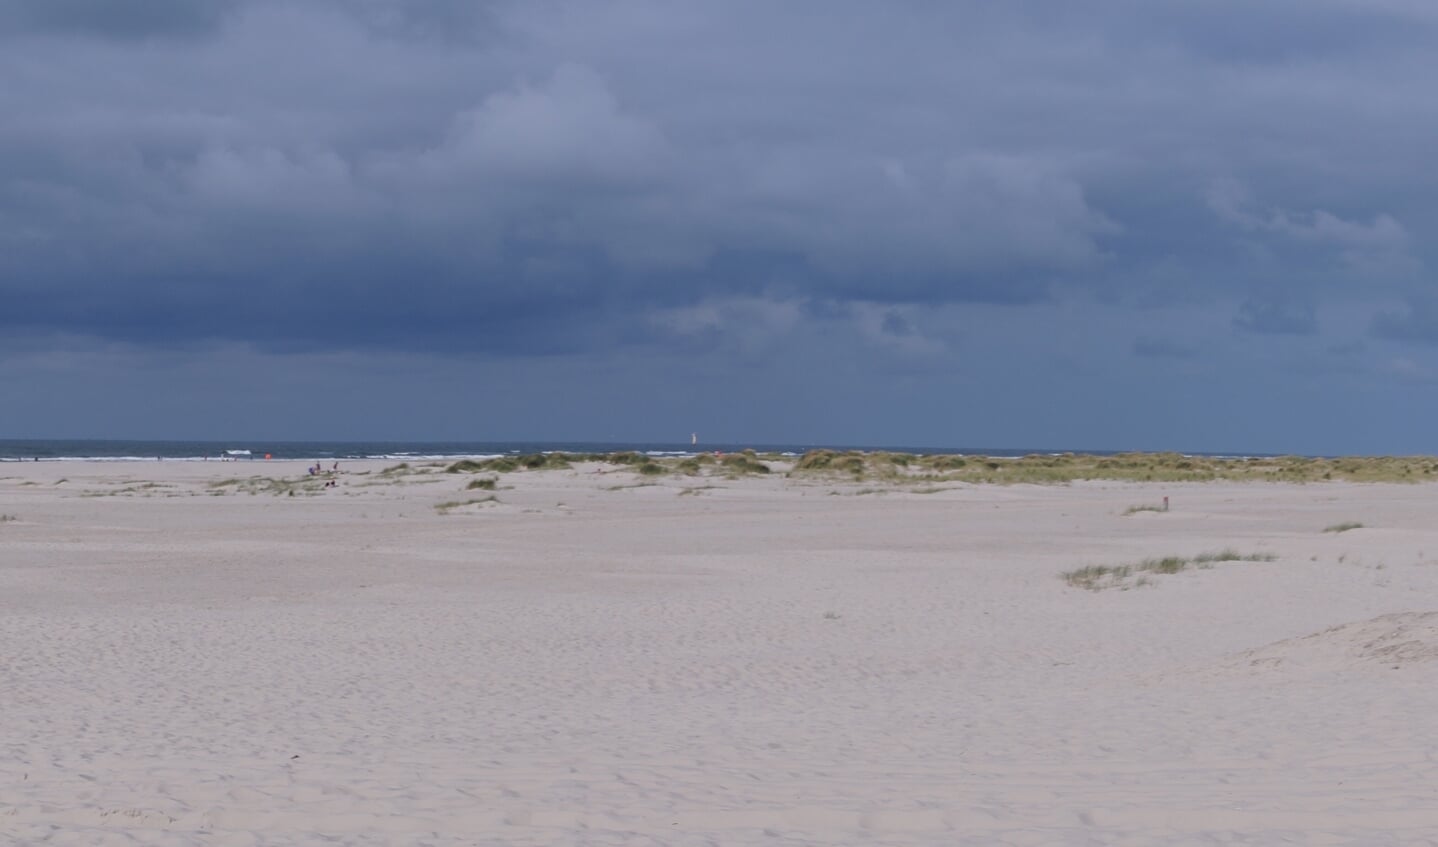 ,,Deze foto is gemaakt in juli 2021 op het strand van Terschelling."Met vriendelijke groetAngeliek Noortman